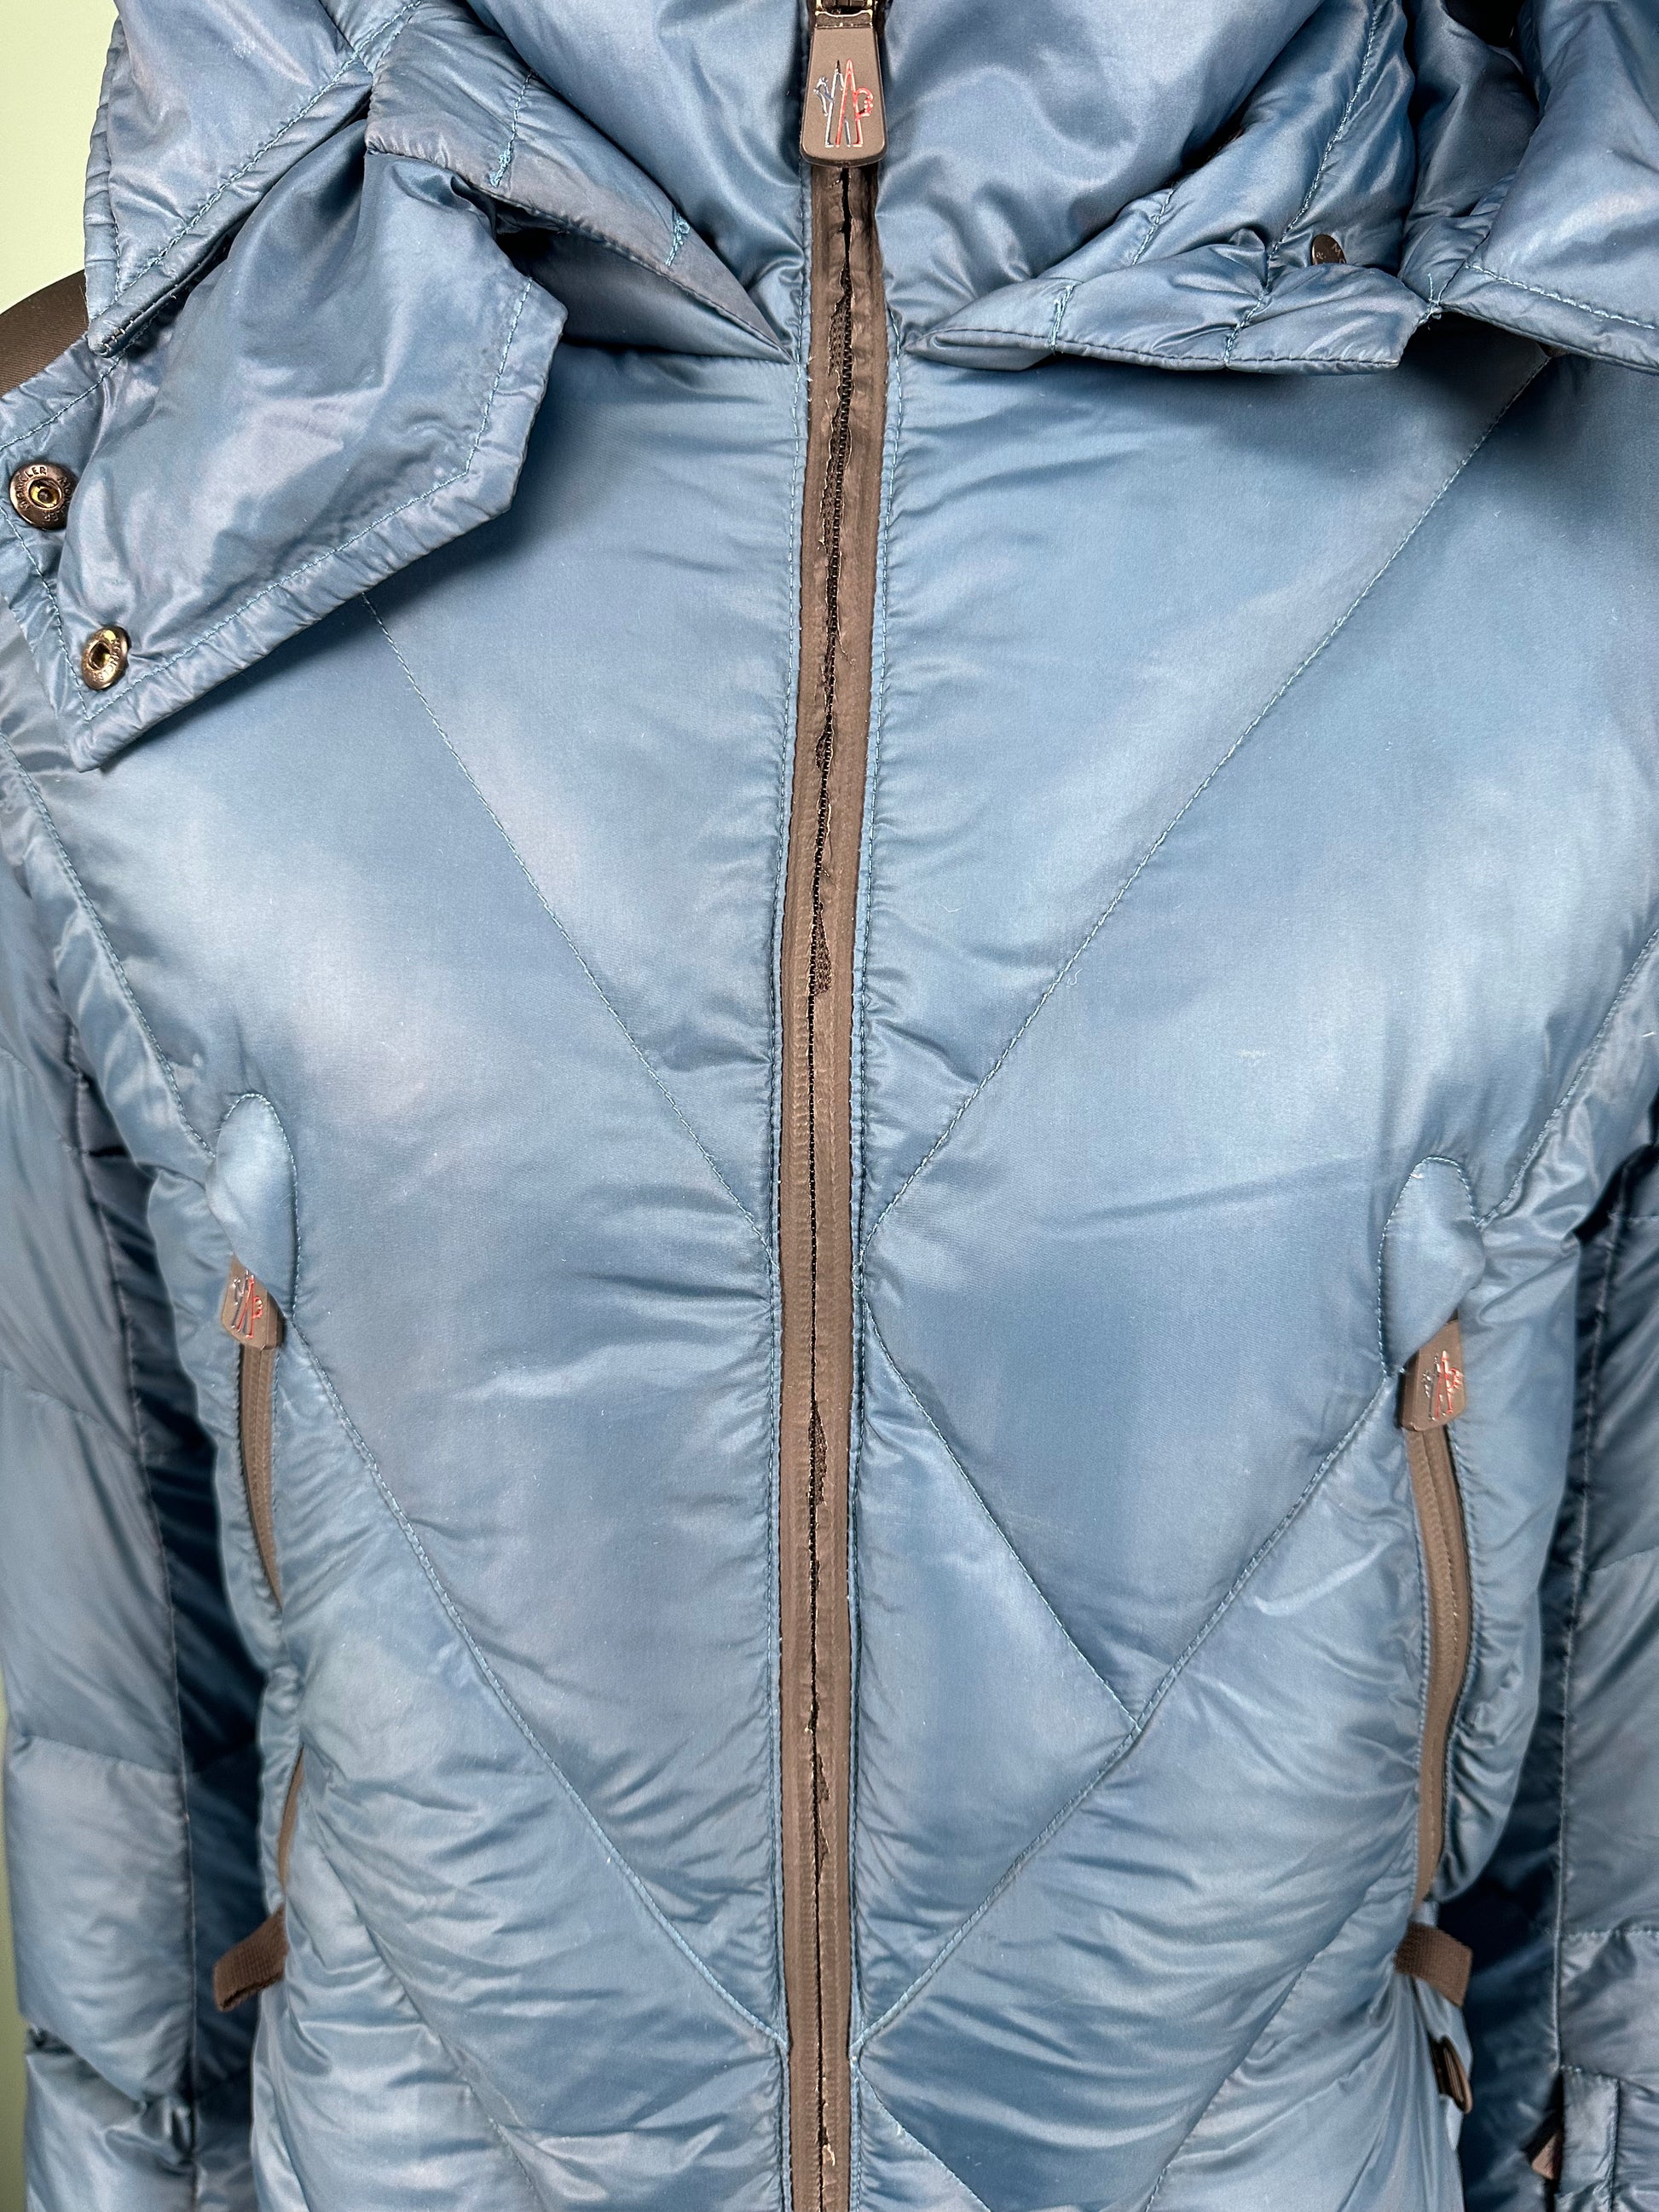 MONCLER GRENOBLE COAT BLUE - SIZE 3 (L) - affluentarchives - Used Designer Clothing Outlet Sale